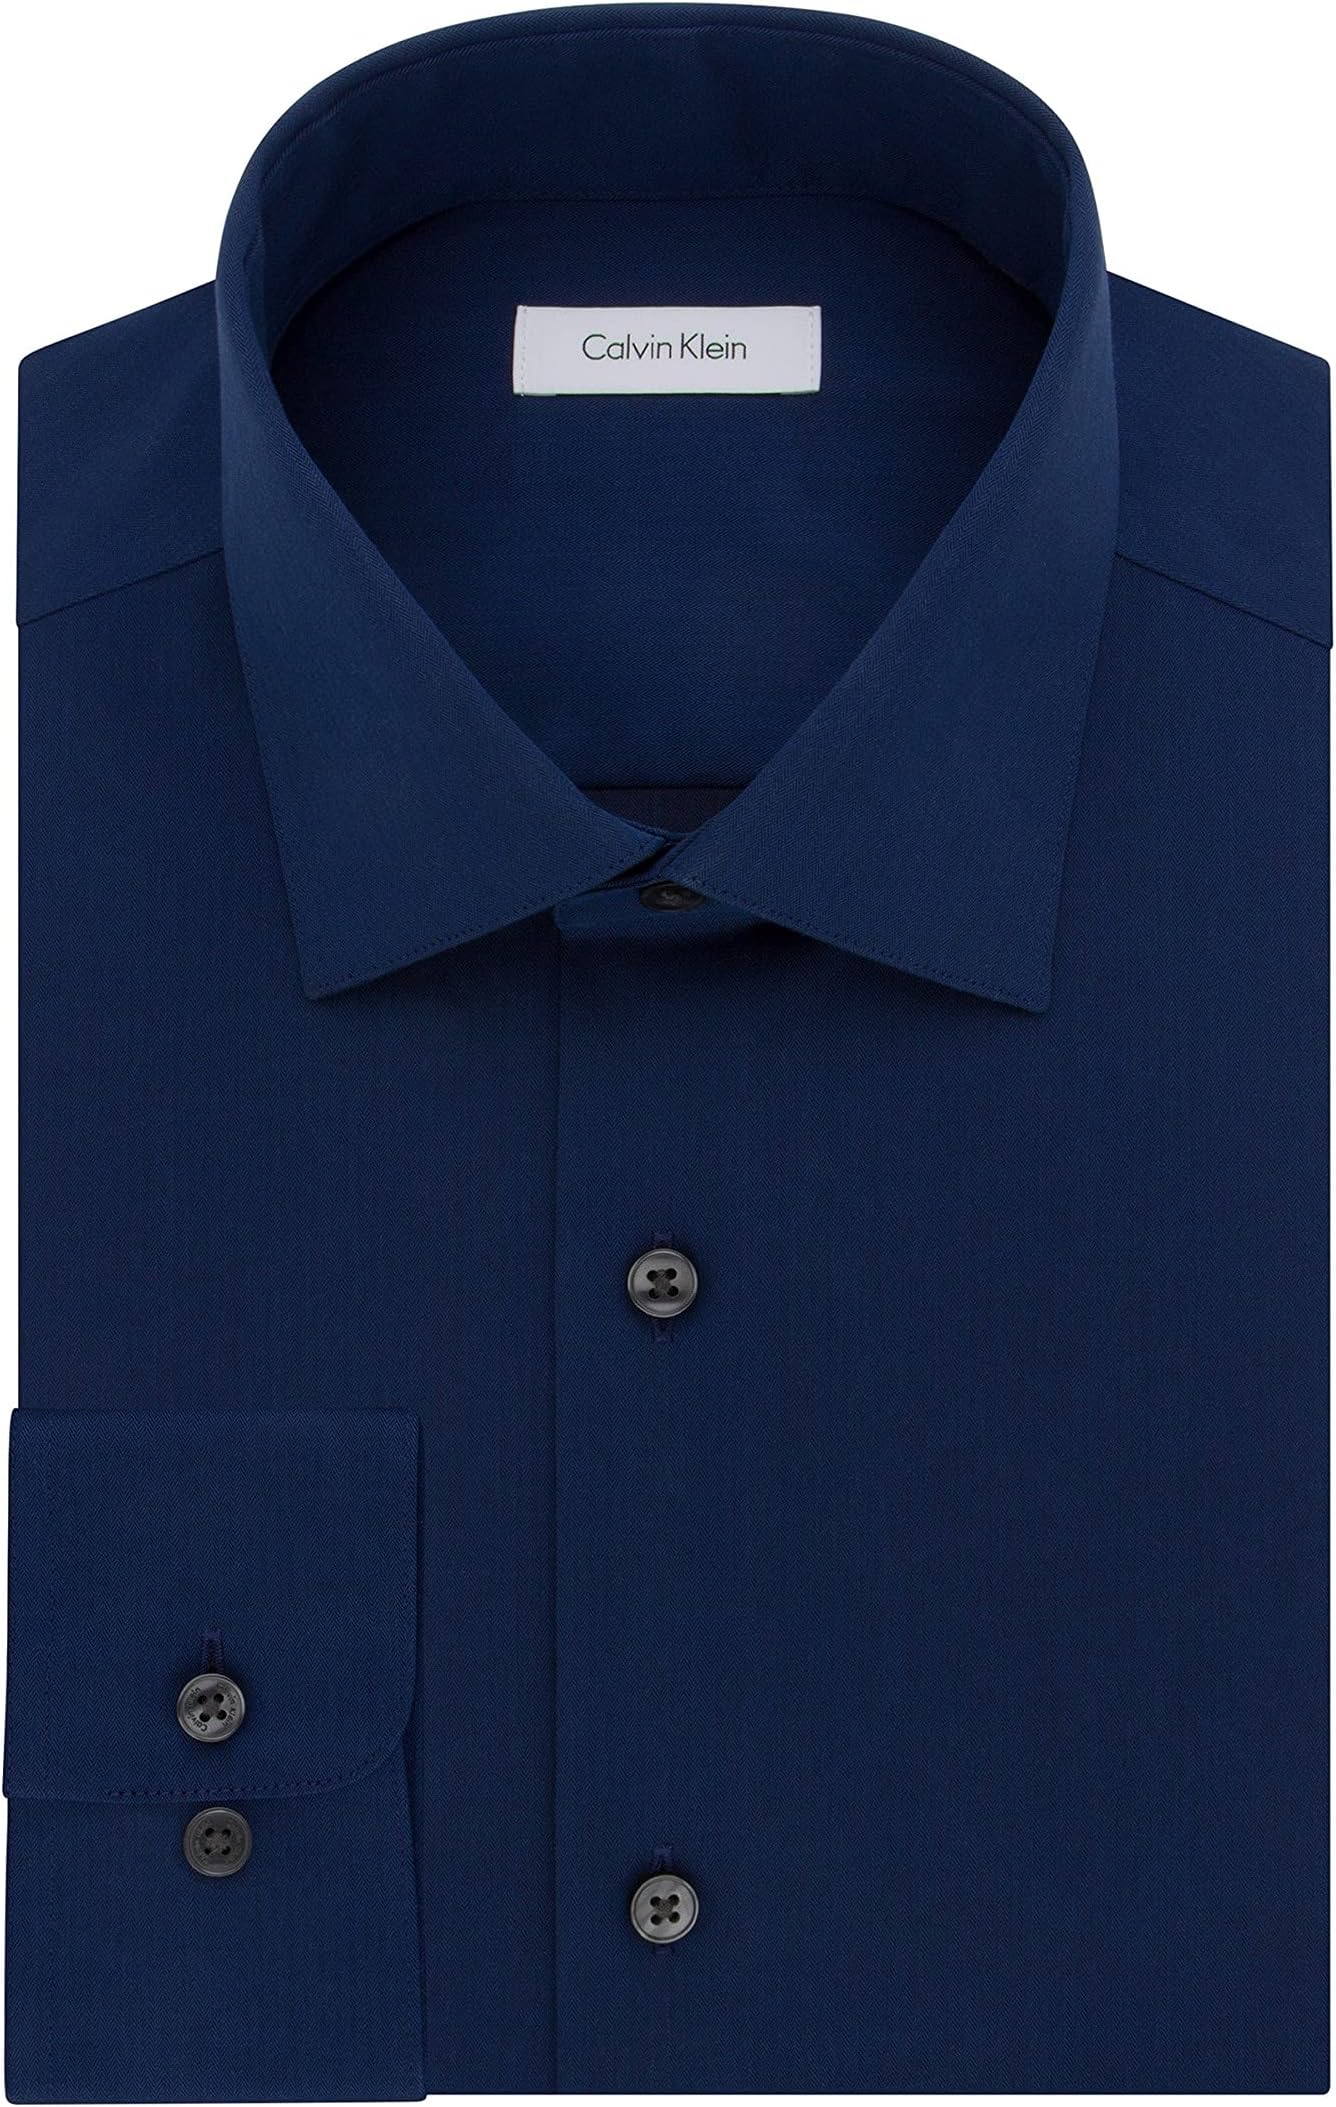 Мужская классическая рубашка стандартного кроя с узором «елочка» без железа Calvin Klein, цвет Blue Velvet